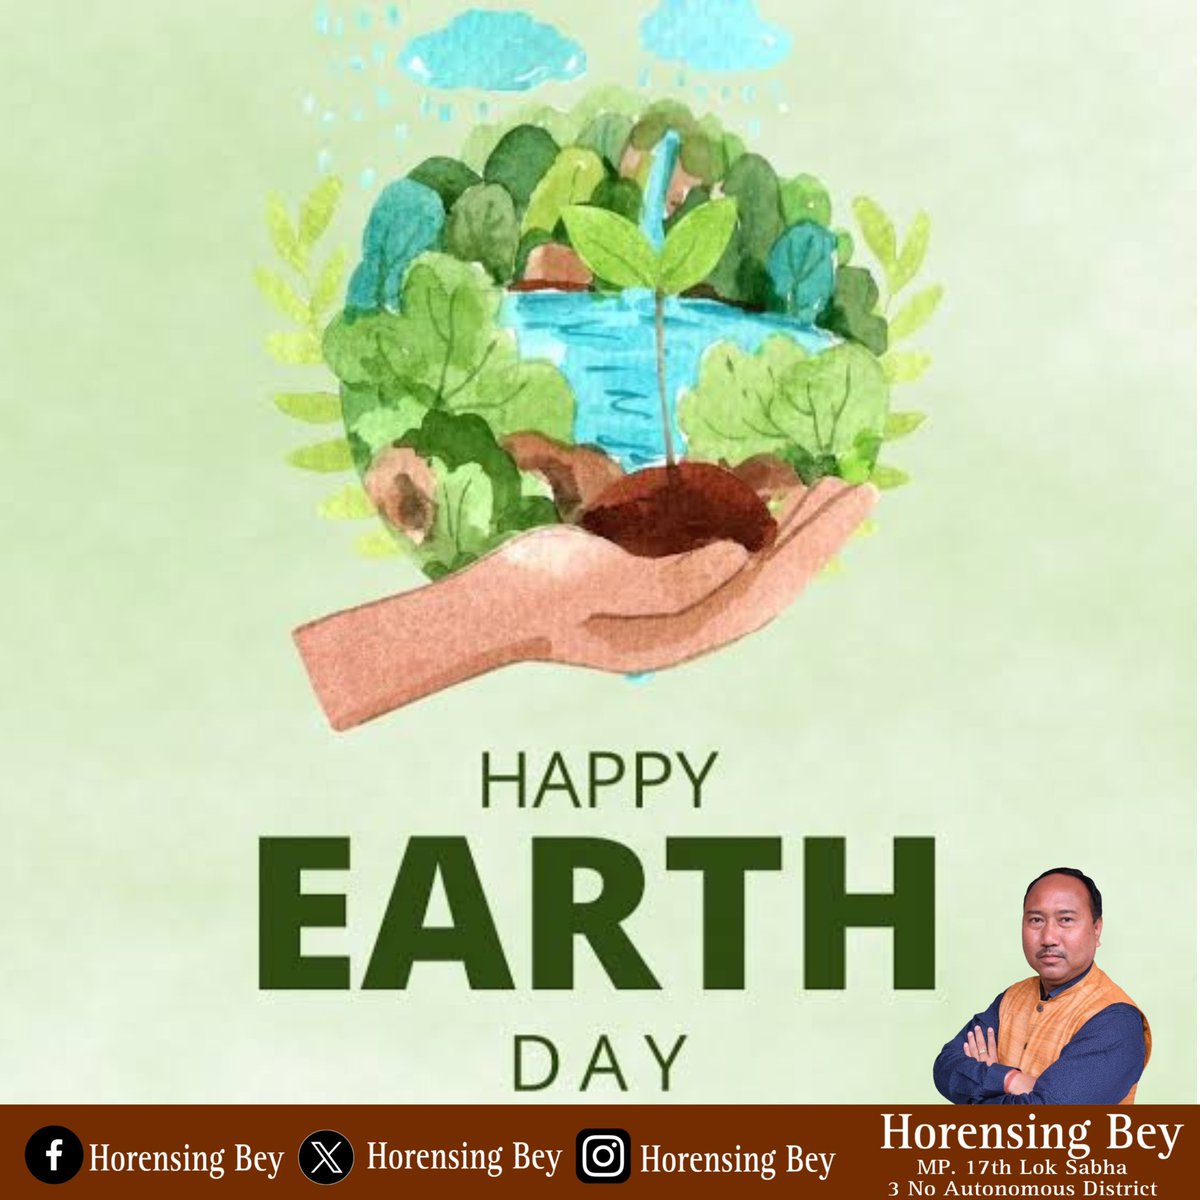 विश्व पृथ्वी दिवस पर आइए हम सब मिलकर धरती मां को हरा भरा बनाने का संकल्प लें। #EarthDay2024 'विश्व पृथ्वी दिवस' के अवसर पर आप सभी को हार्दिक शुभकामनाएं। आइये, स्वच्छता, जल संरक्षण तथा अधिक से अधिक पौधरोपण कर पृथ्वी माँ को और भव्य बनाने का संकल्प लें।